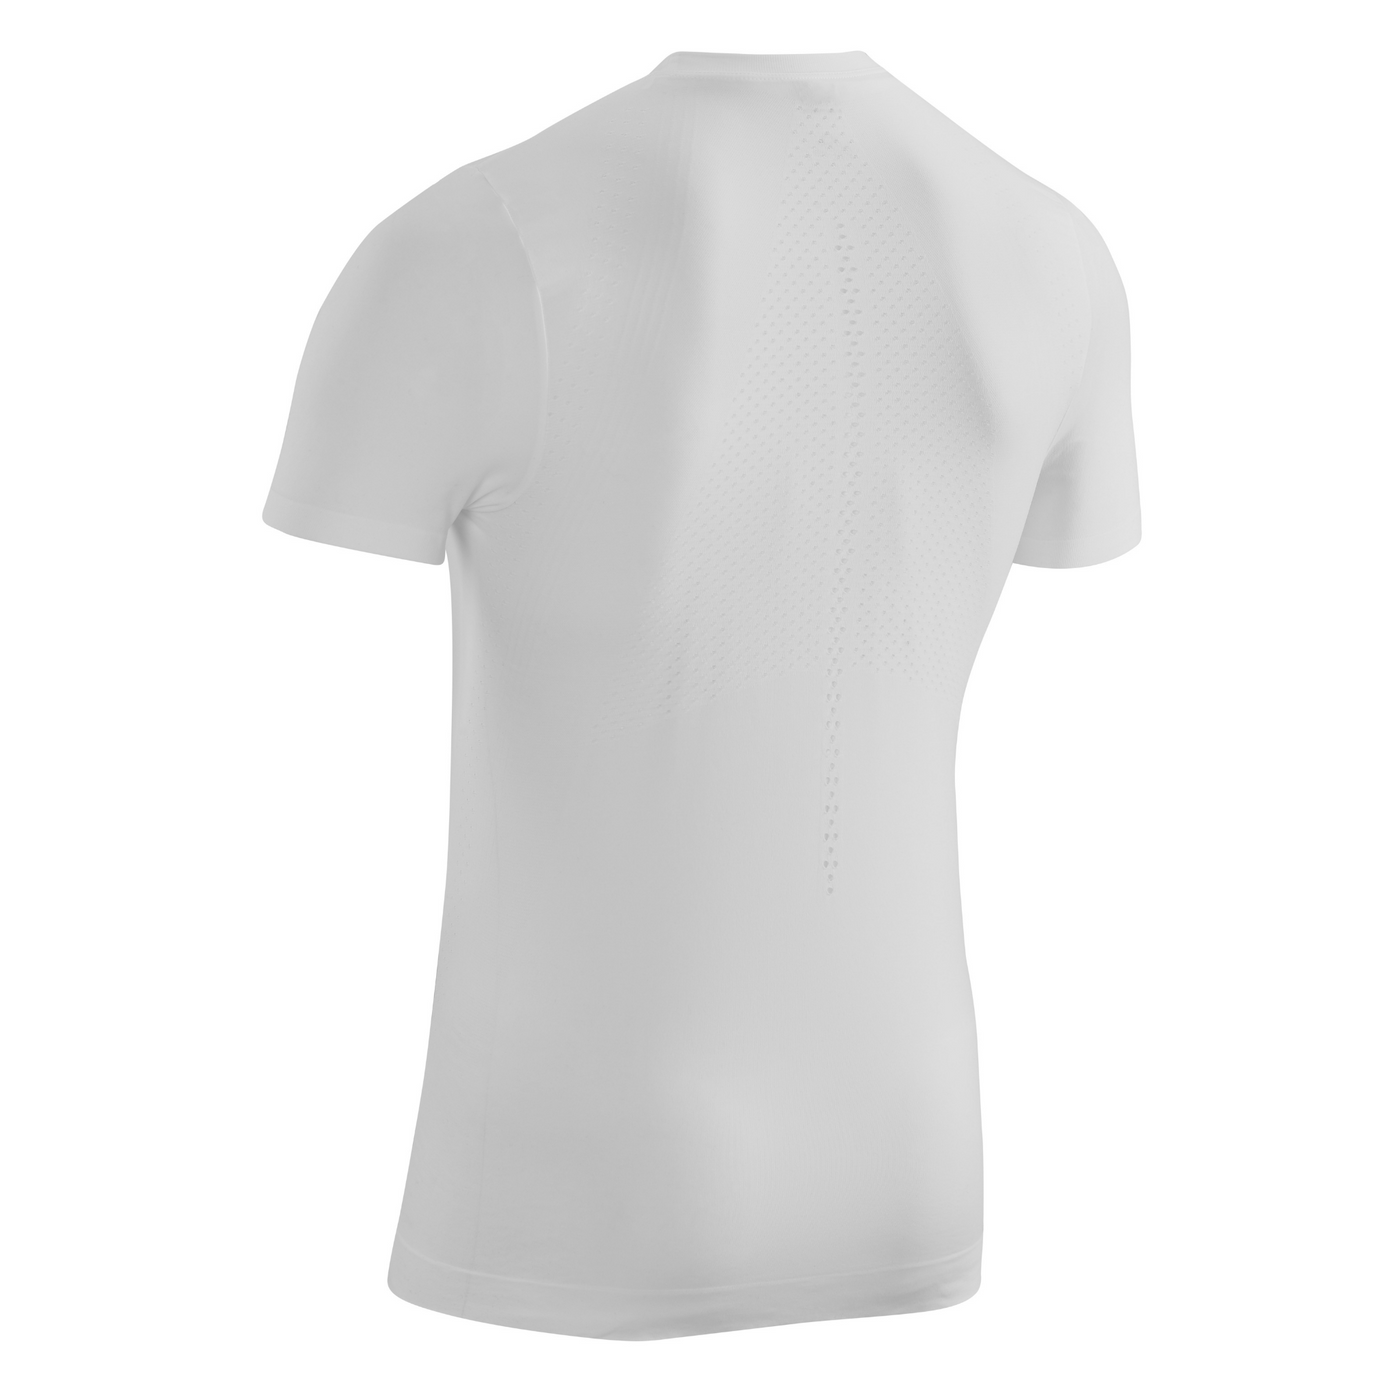 Ultralight Short Sleeve Shirt, Men, White, Back View